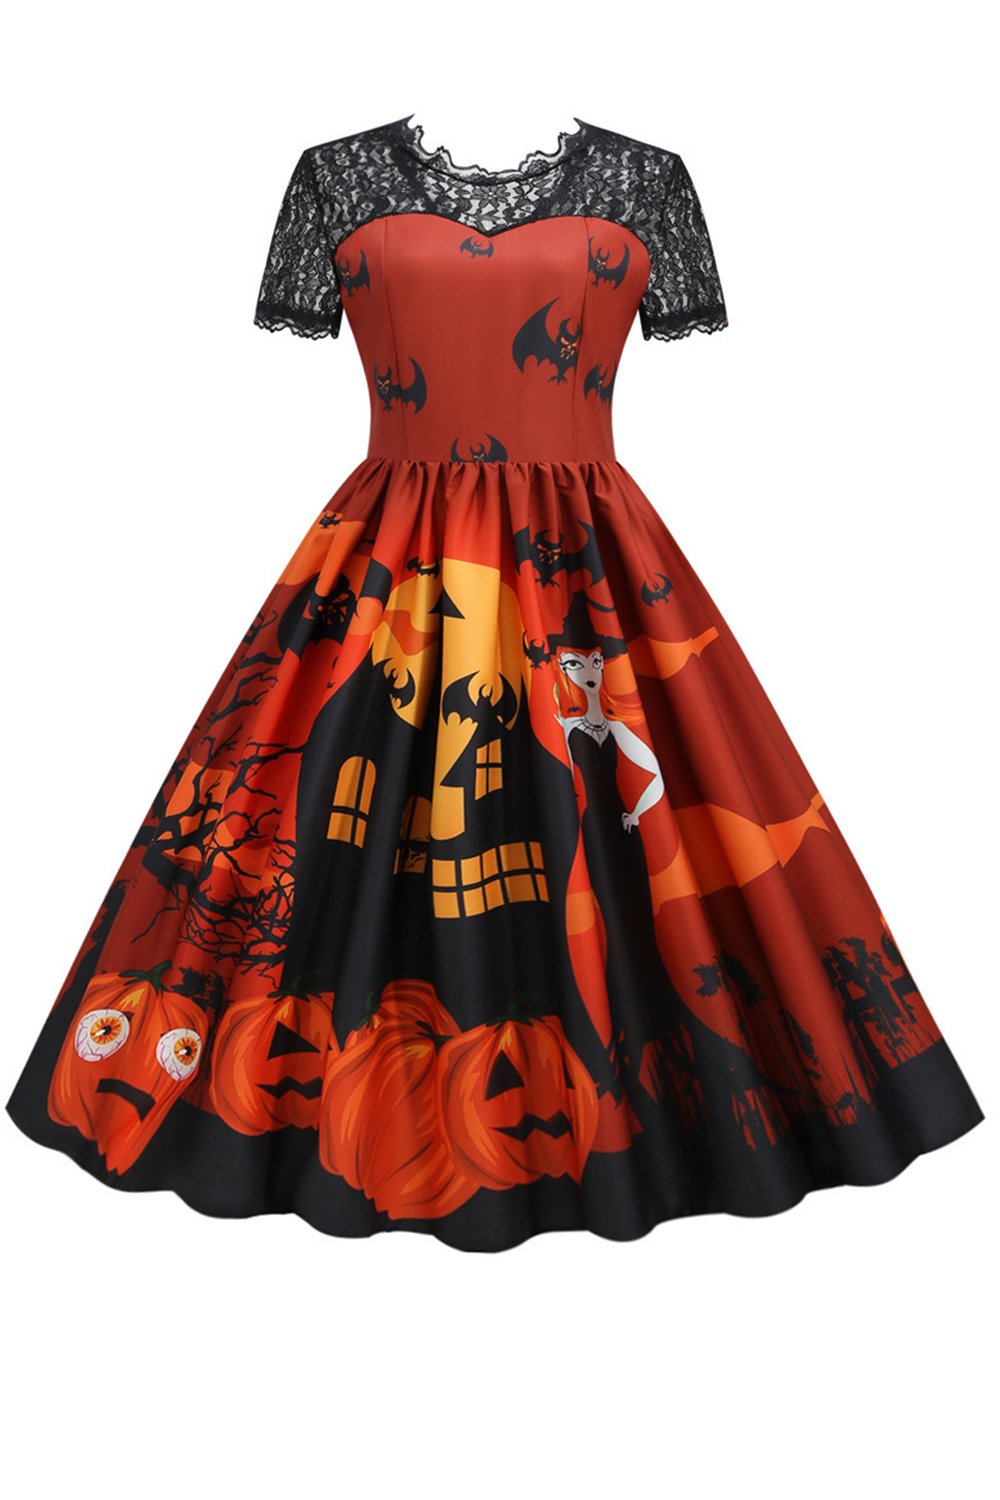 Orange Halloween Vintage Kleid mit Spitze